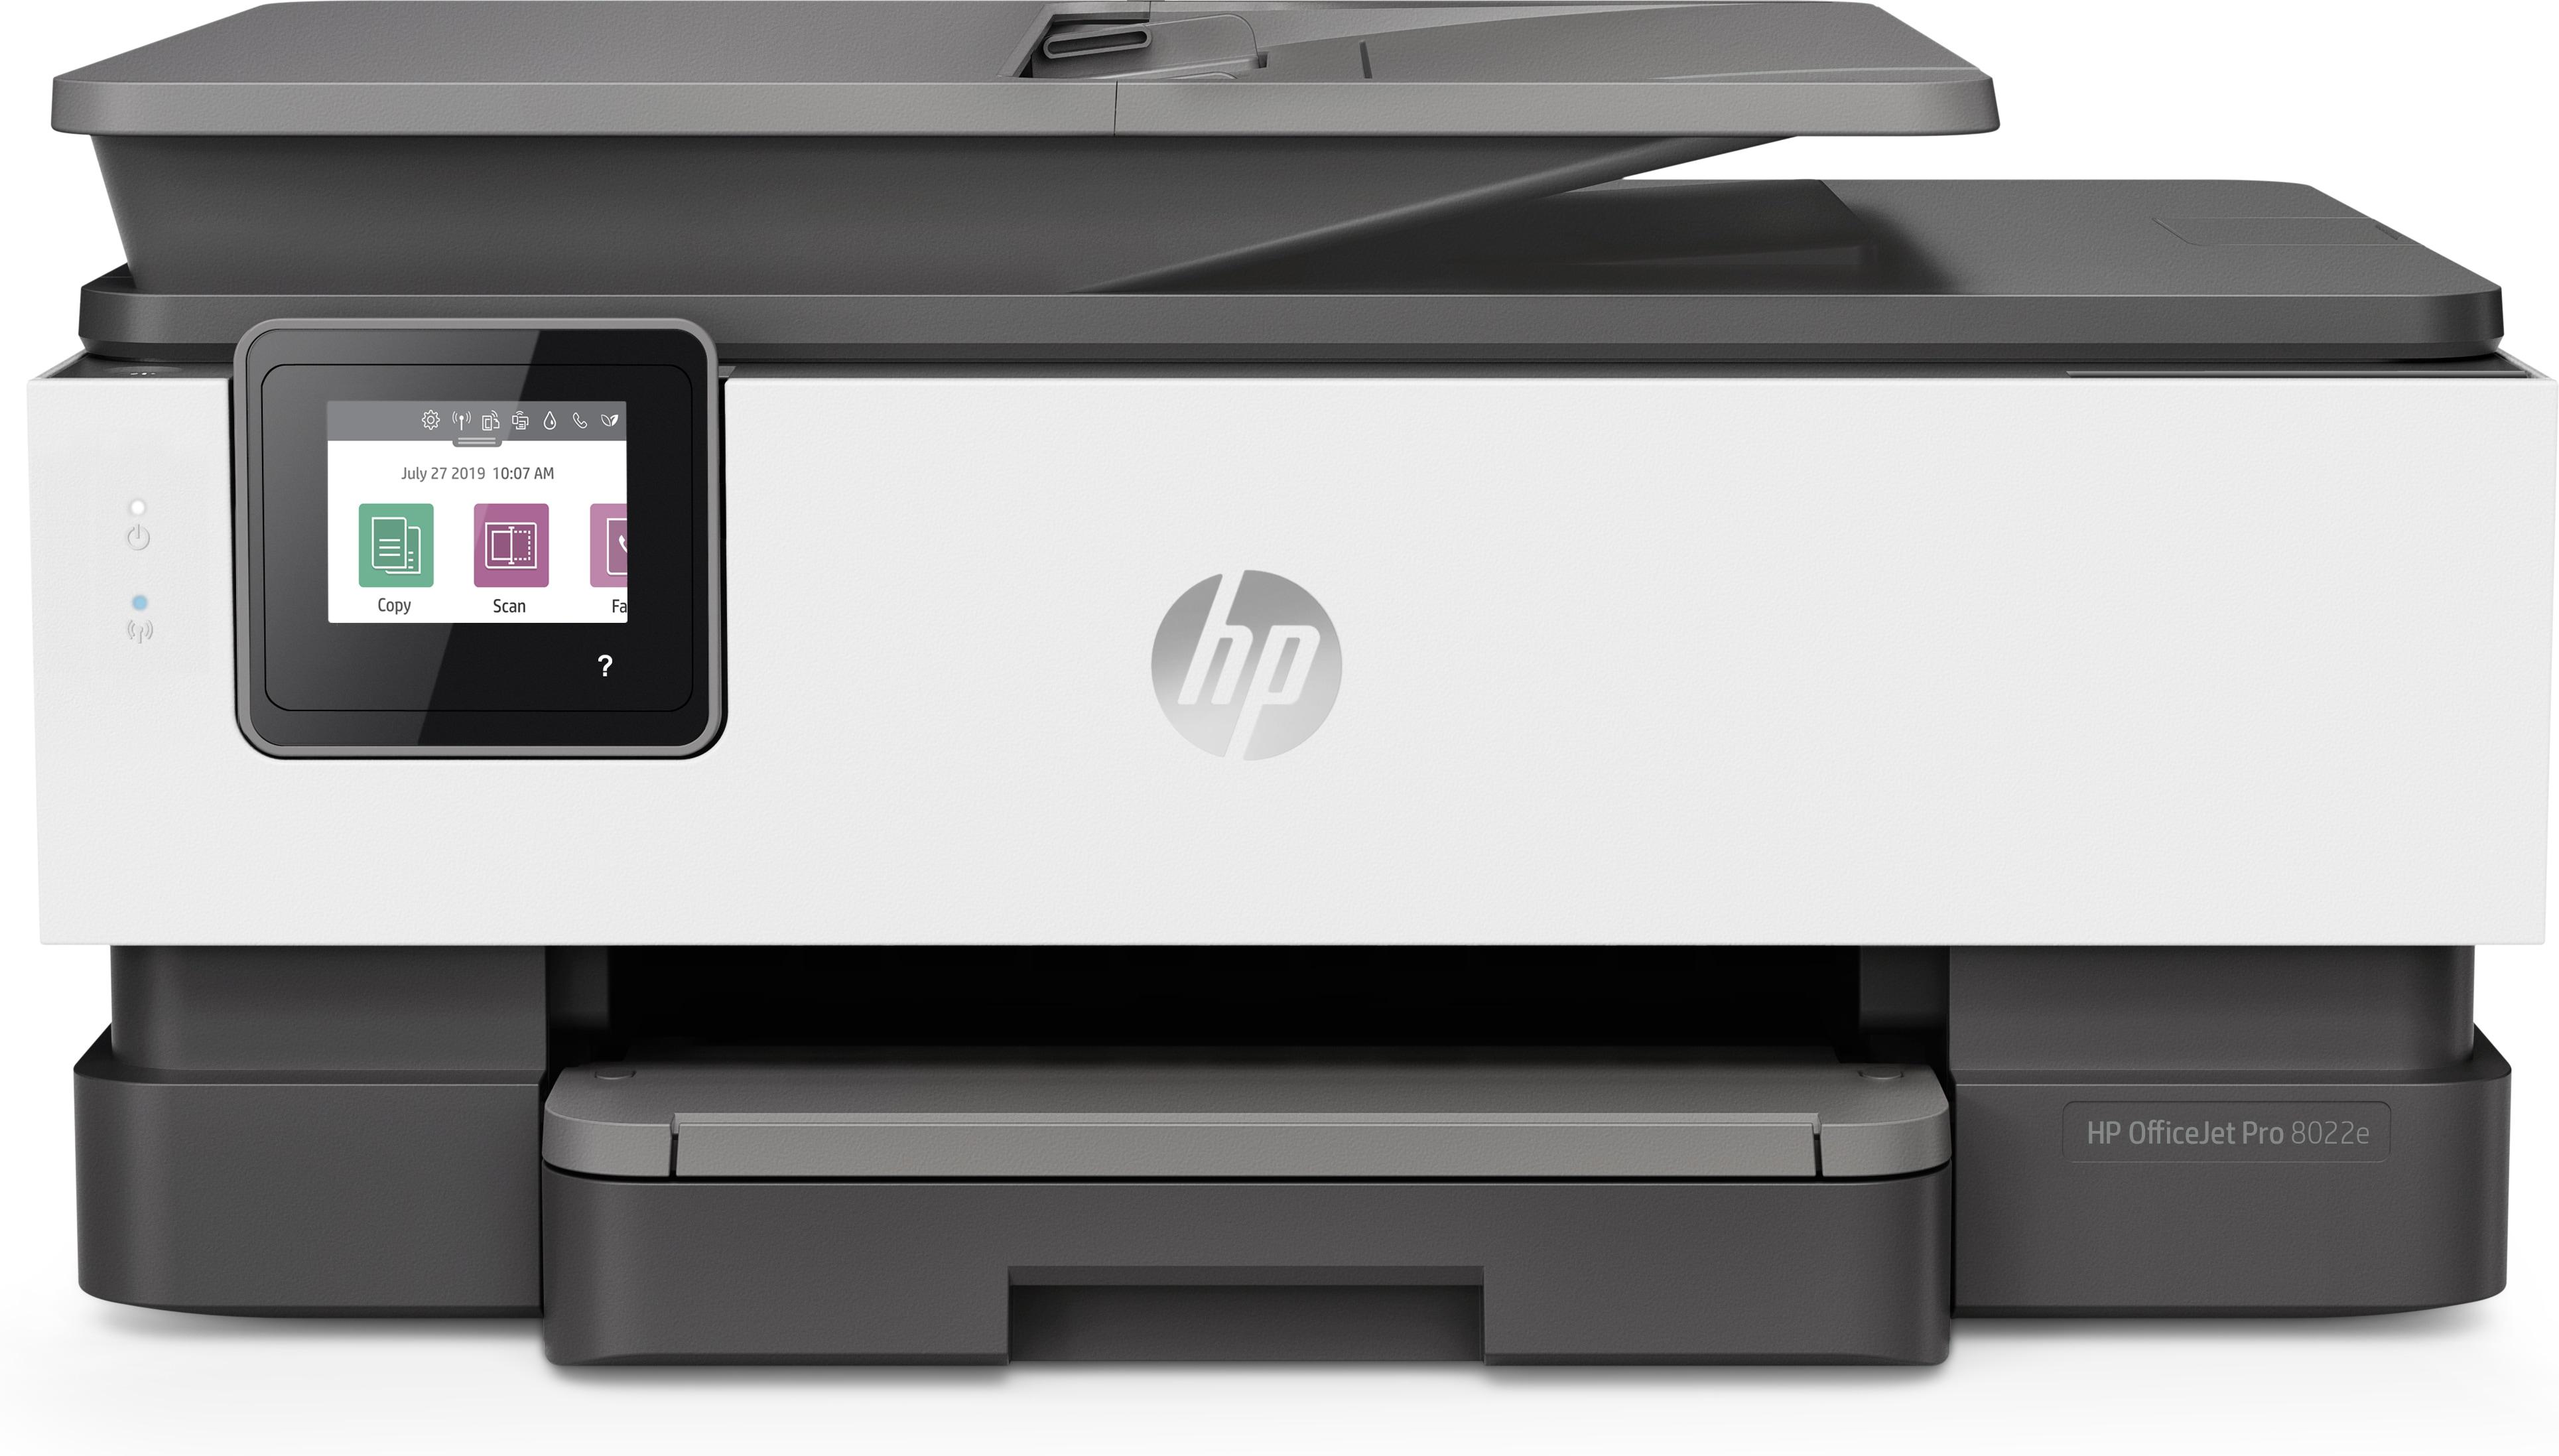 Impressora Jato de Tinta HP OfficeJet 8022e, HP+, USB, Ecrã tátil Elegível para HP - Instant Ink